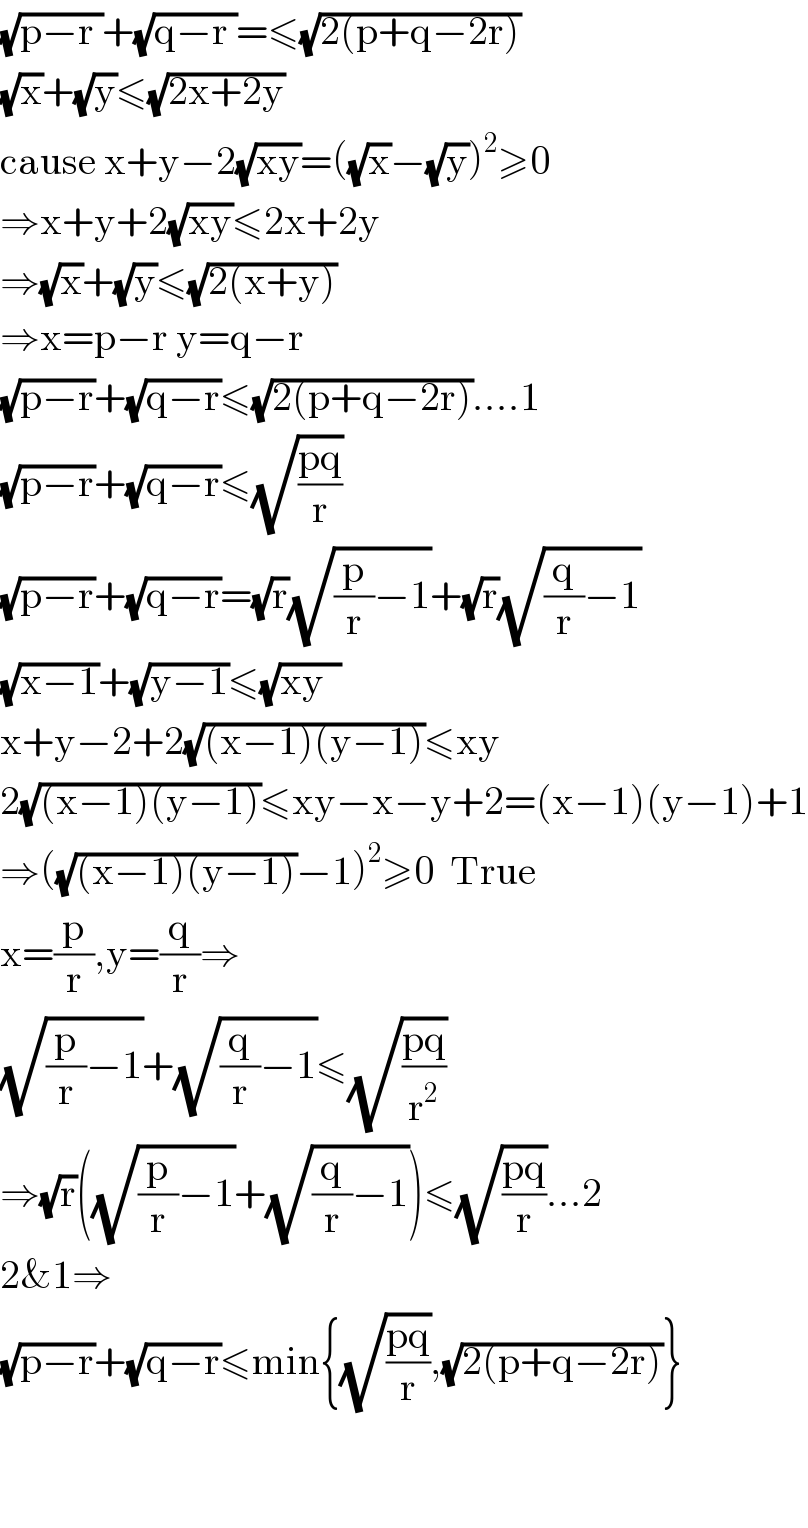 (√(p−r ))+(√(q−r ))=≤(√(2(p+q−2r)))  (√x)+(√y)≤(√(2x+2y))  cause x+y−2(√(xy))=((√x)−(√y))^2 ≥0  ⇒x+y+2(√(xy))≤2x+2y  ⇒(√x)+(√y)≤(√(2(x+y)))  ⇒x=p−r y=q−r  (√(p−r))+(√(q−r))≤(√(2(p+q−2r)))....1  (√(p−r))+(√(q−r))≤(√((pq)/r))  (√(p−r))+(√(q−r))=(√r)(√((p/r)−1))+(√r)(√((q/r)−1))  (√(x−1))+(√(y−1))≤(√(xy  ))  x+y−2+2(√((x−1)(y−1)))≤xy  2(√((x−1)(y−1)))≤xy−x−y+2=(x−1)(y−1)+1  ⇒((√((x−1)(y−1)))−1)^2 ≥0  True  x=(p/r),y=(q/r)⇒  (√((p/r)−1))+(√((q/r)−1))≤(√((pq)/r^2 ))  ⇒(√r)((√((p/r)−1))+(√((q/r)−1)))≤(√((pq)/r))...2  2&1⇒  (√(p−r))+(√(q−r))≤min{(√((pq)/r)),(√(2(p+q−2r)))}      